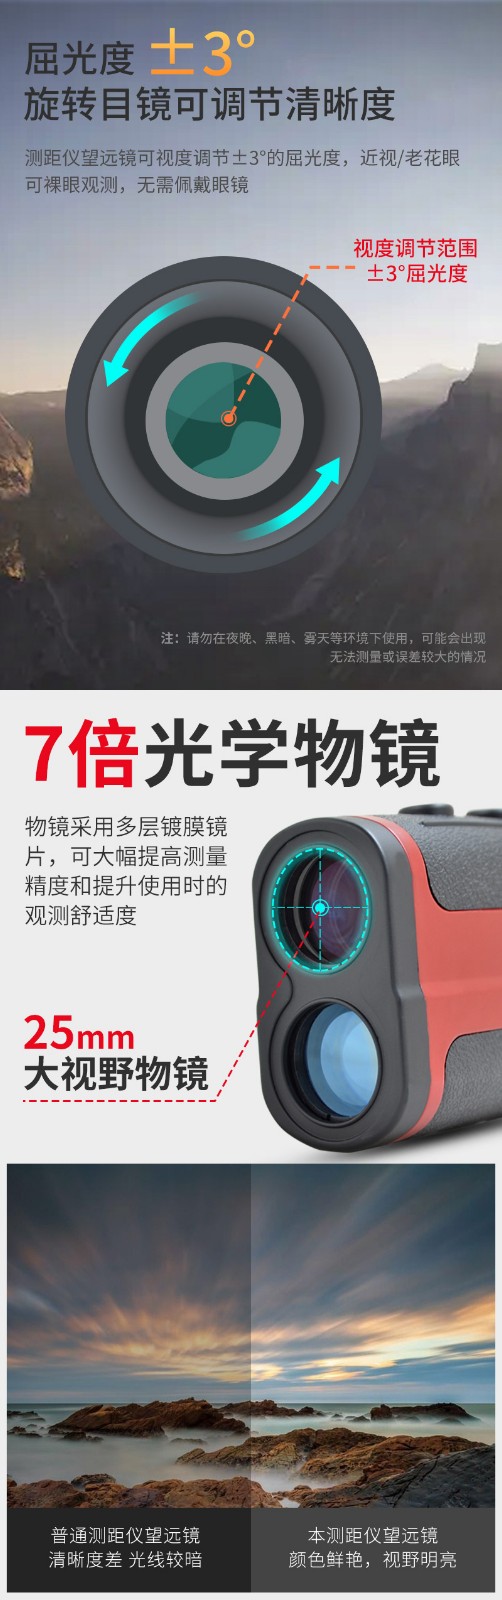 中安 ONG300 激光测距仪 专业版